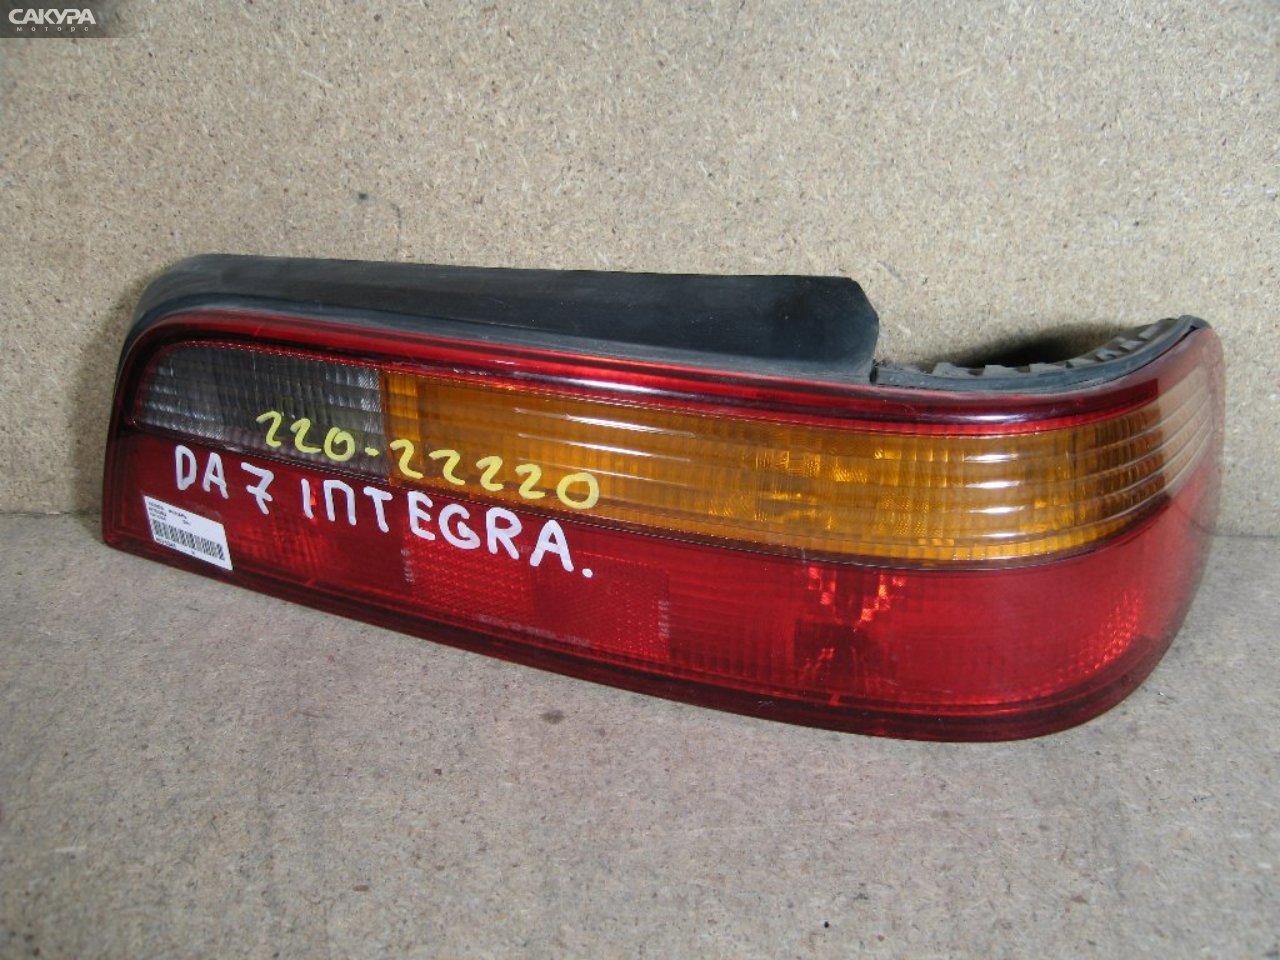 Фонарь стоп-сигнала правый Honda Integra DA7 220-22220: купить в Сакура Абакан.